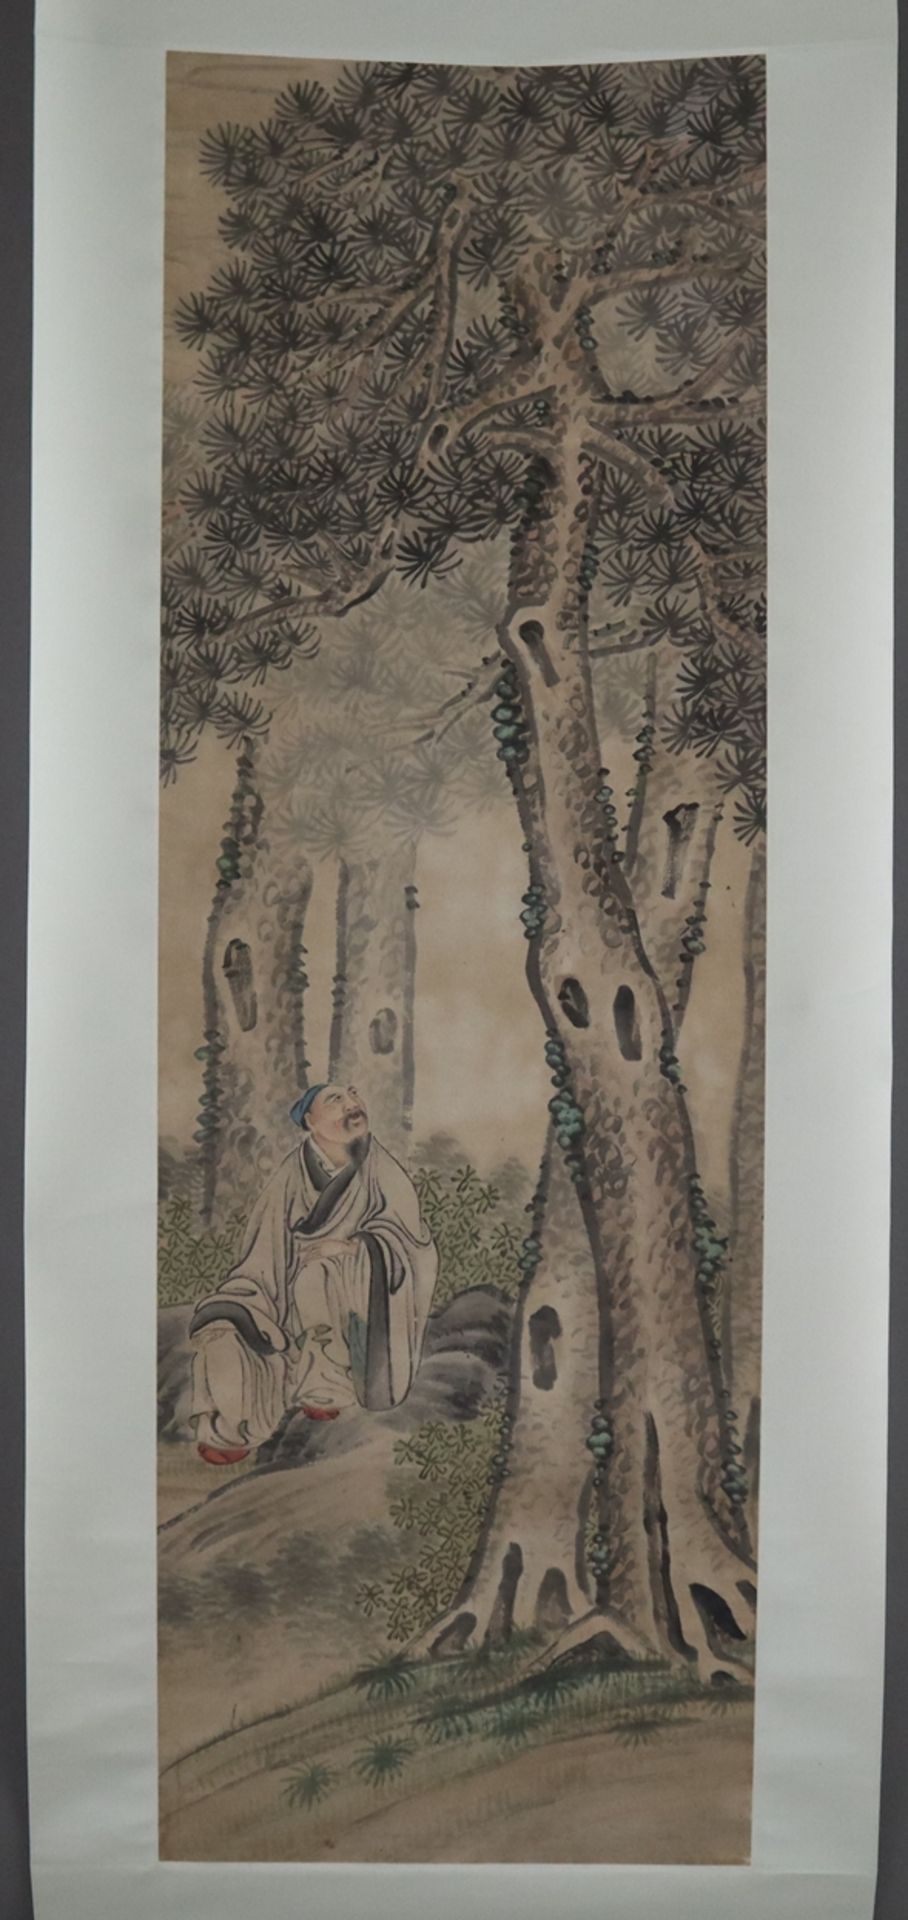 Chinesisches Rollbild - Gelehrter unter einem mächtigen Baum sitzend, Tusche und leichte Farben auf